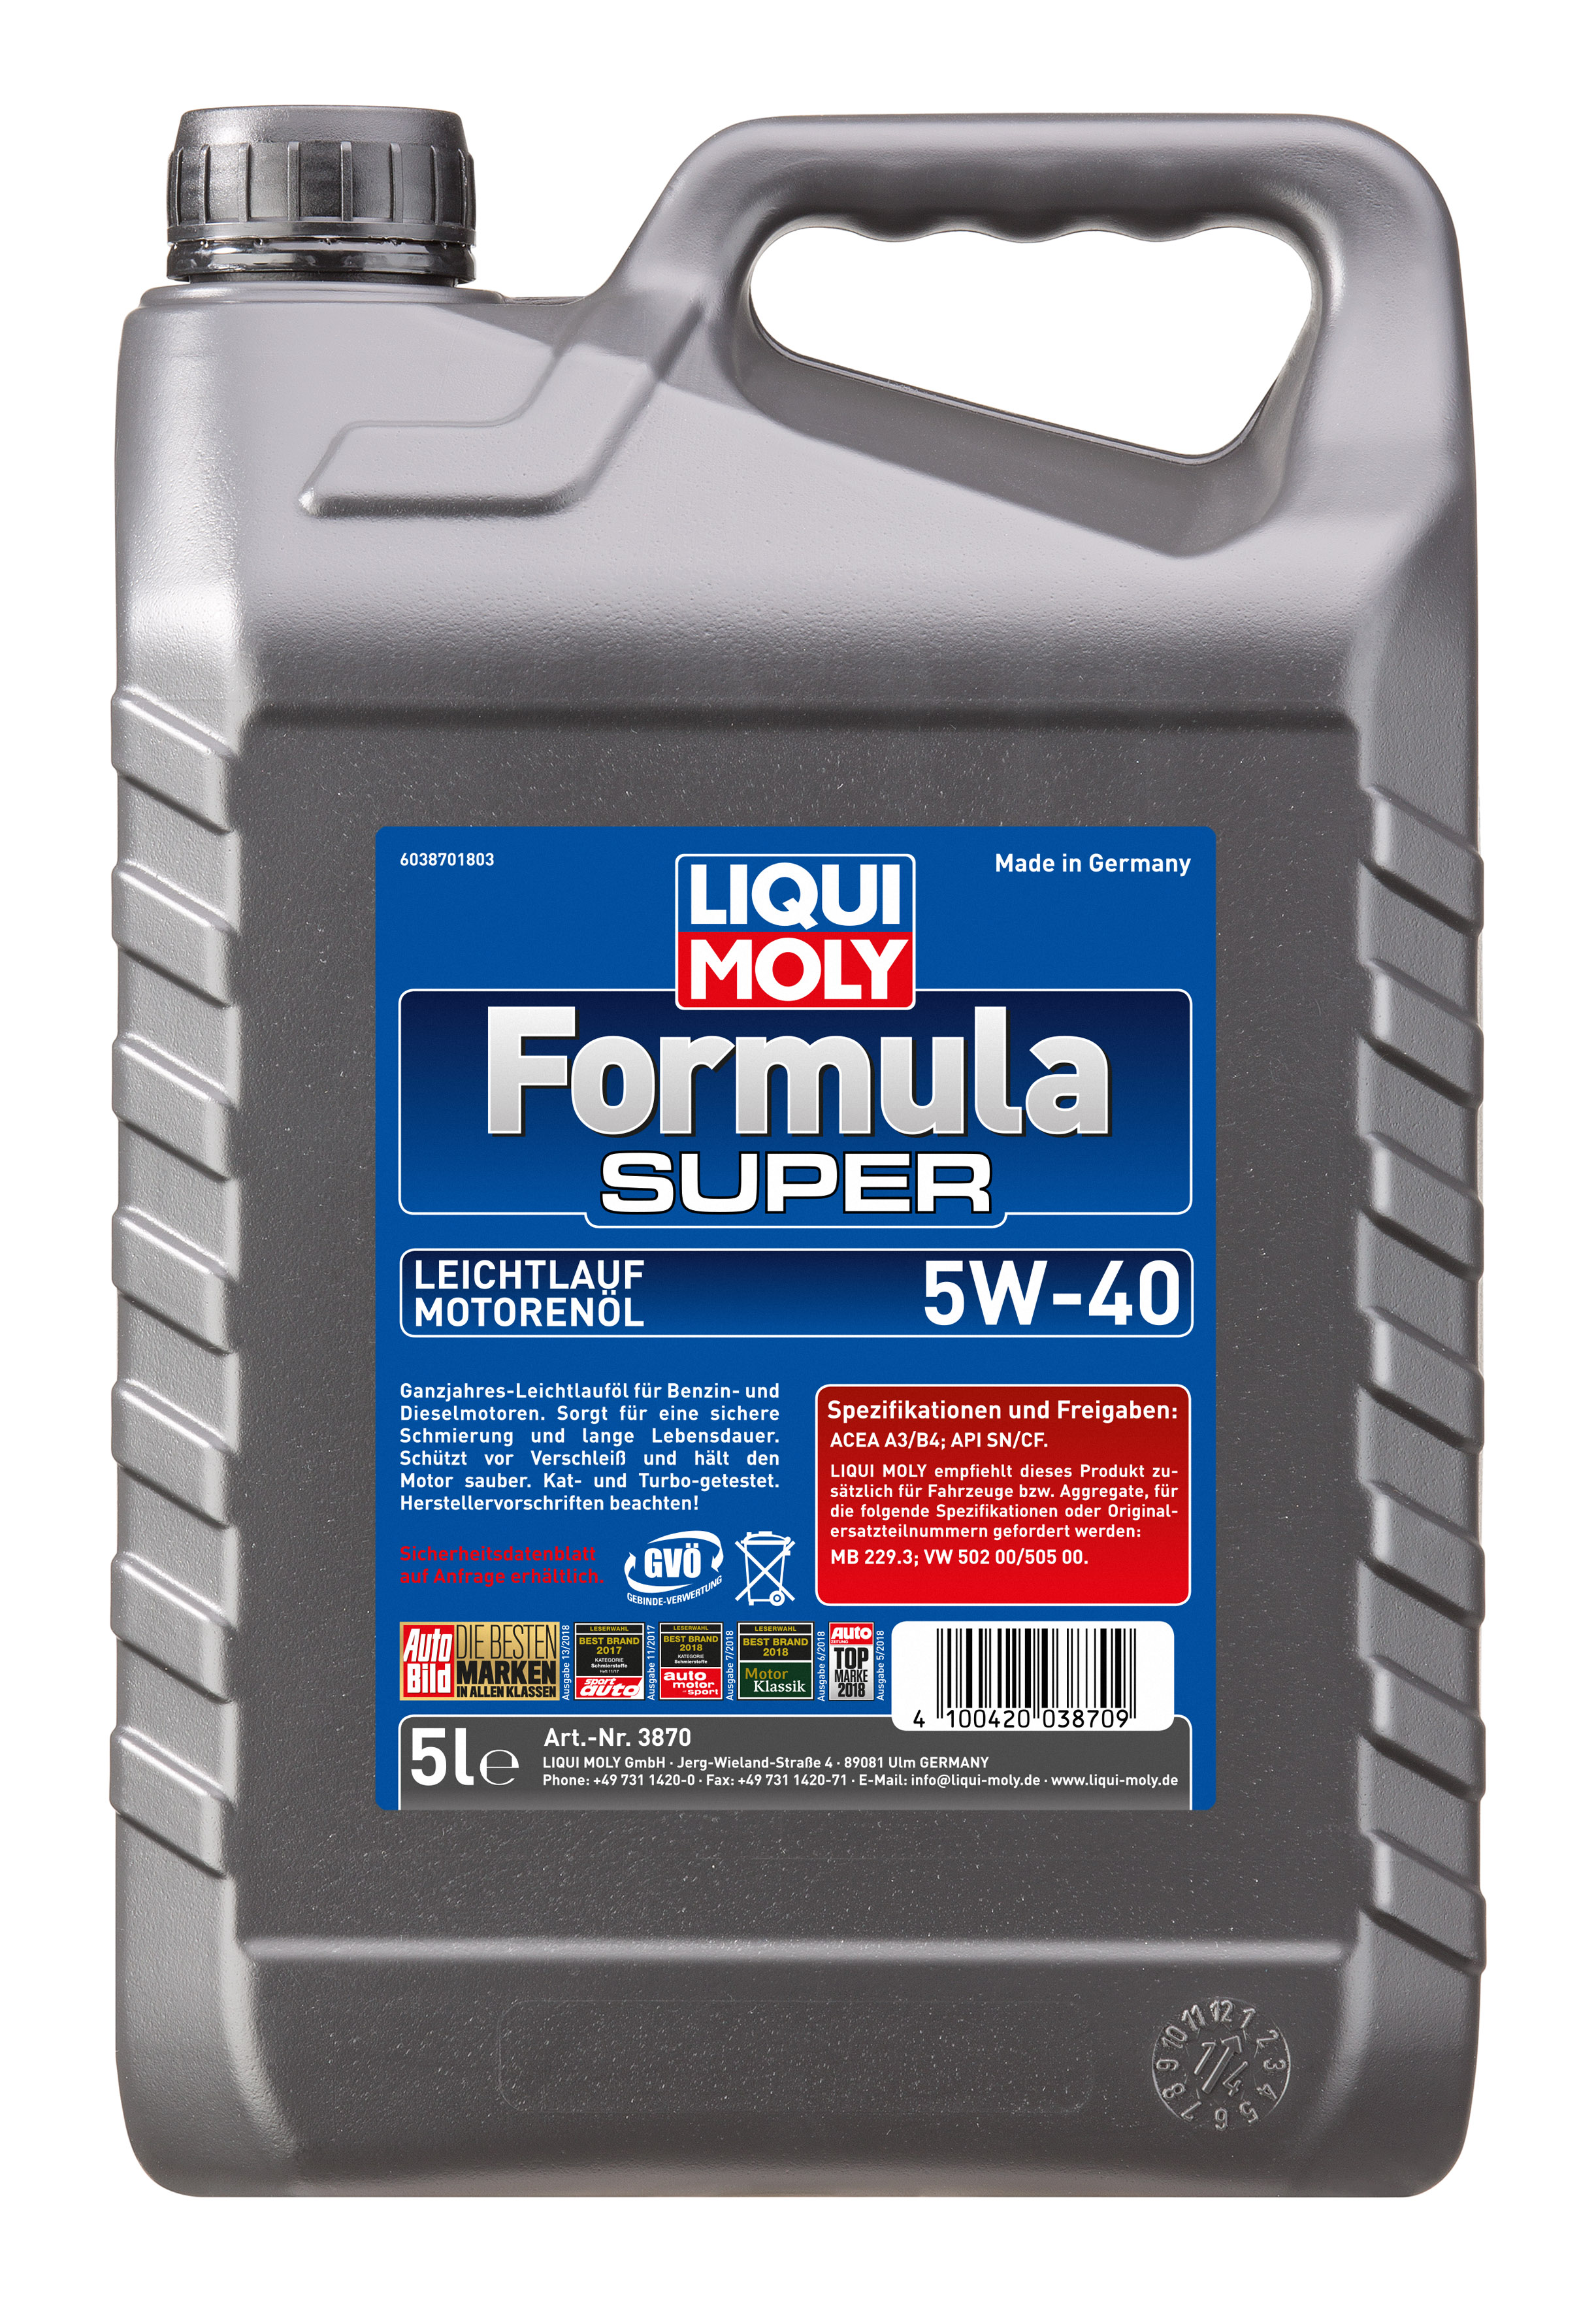 LIQUI MOLY FORMULA SUPER 5W-40 5L